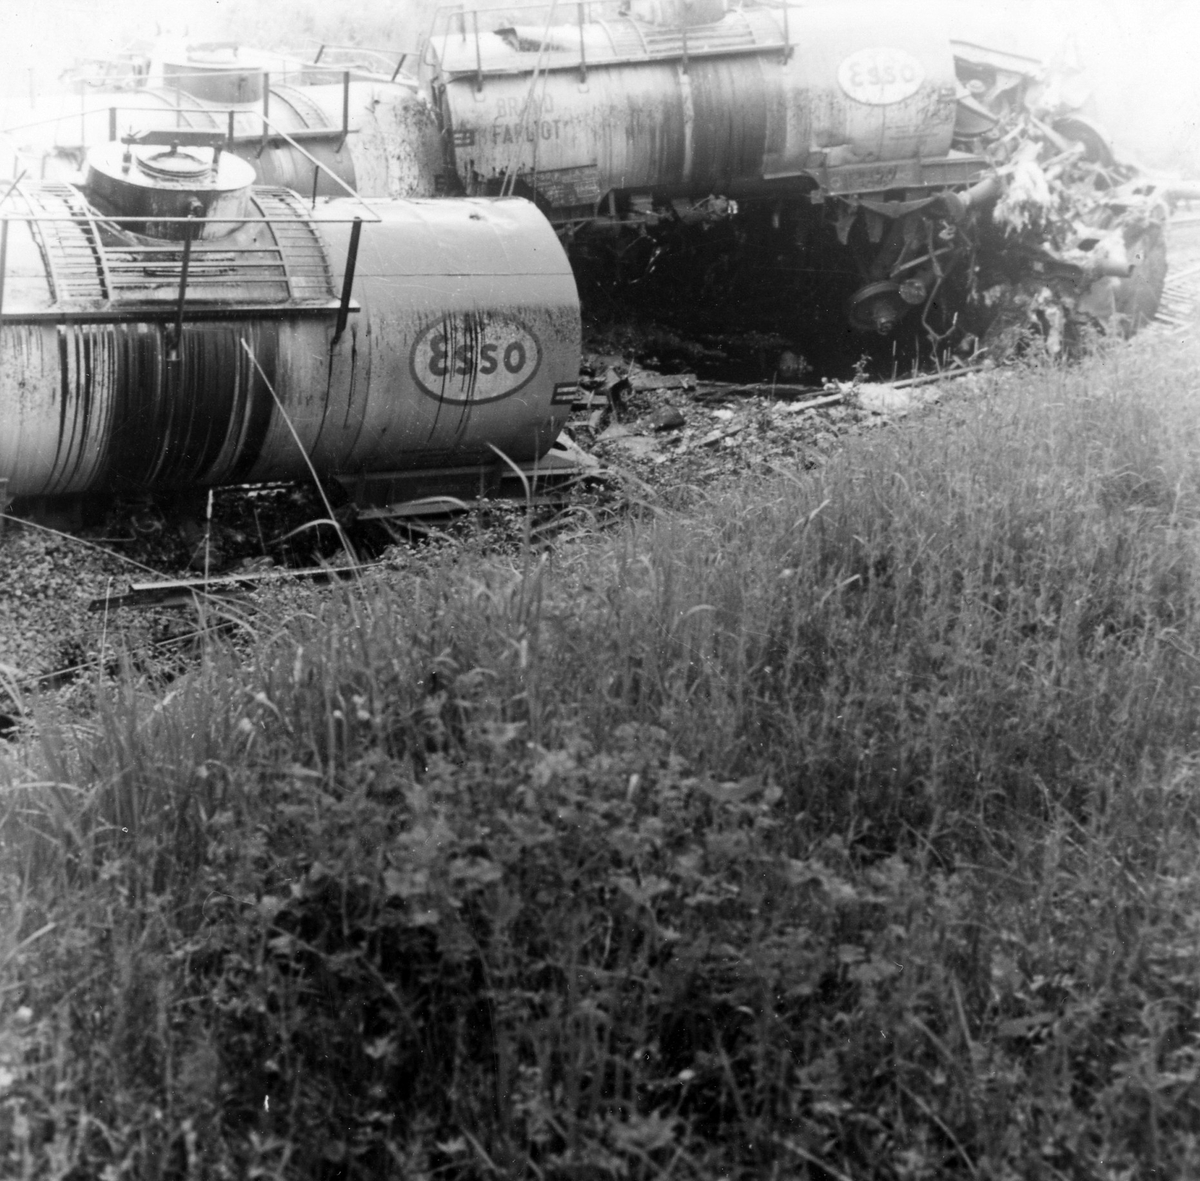 Tågurspårning i Västra Bodarne 13 juni 1966 ca kl 19.20. Tåget transporterade olja och omkring 170 kubikmeter eldningsolja rann ut på platsen. Sanneringen kostade SJ runt 1,3 miljoner kronor.